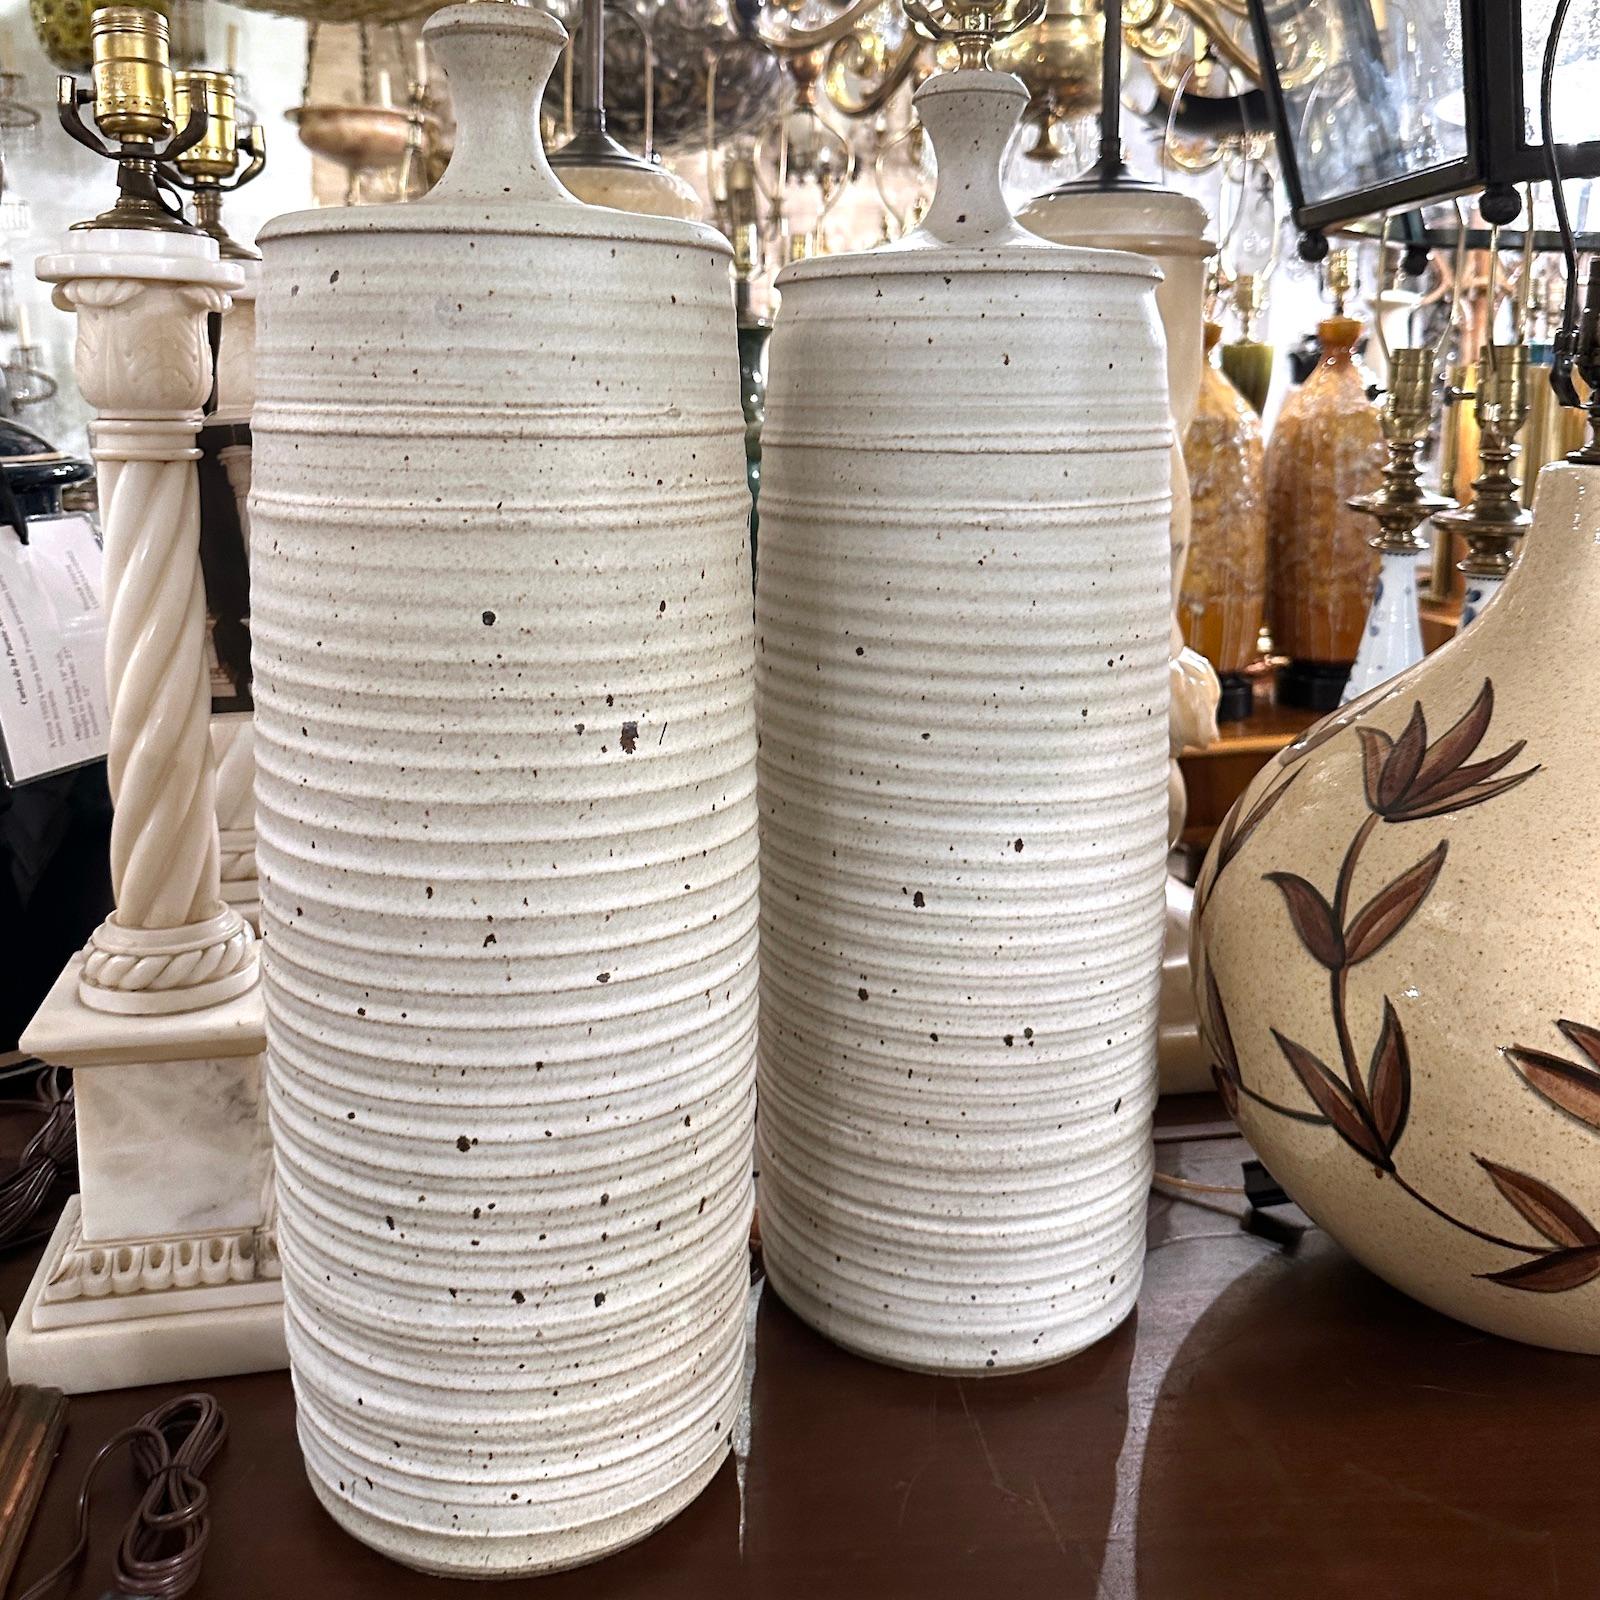 Paire de grandes lampes de table suédoises en céramique datant des années 1960.

Mesures :
Hauteur du corps : 24
Hauteur jusqu'à l'appui de l'abat-jour : 35